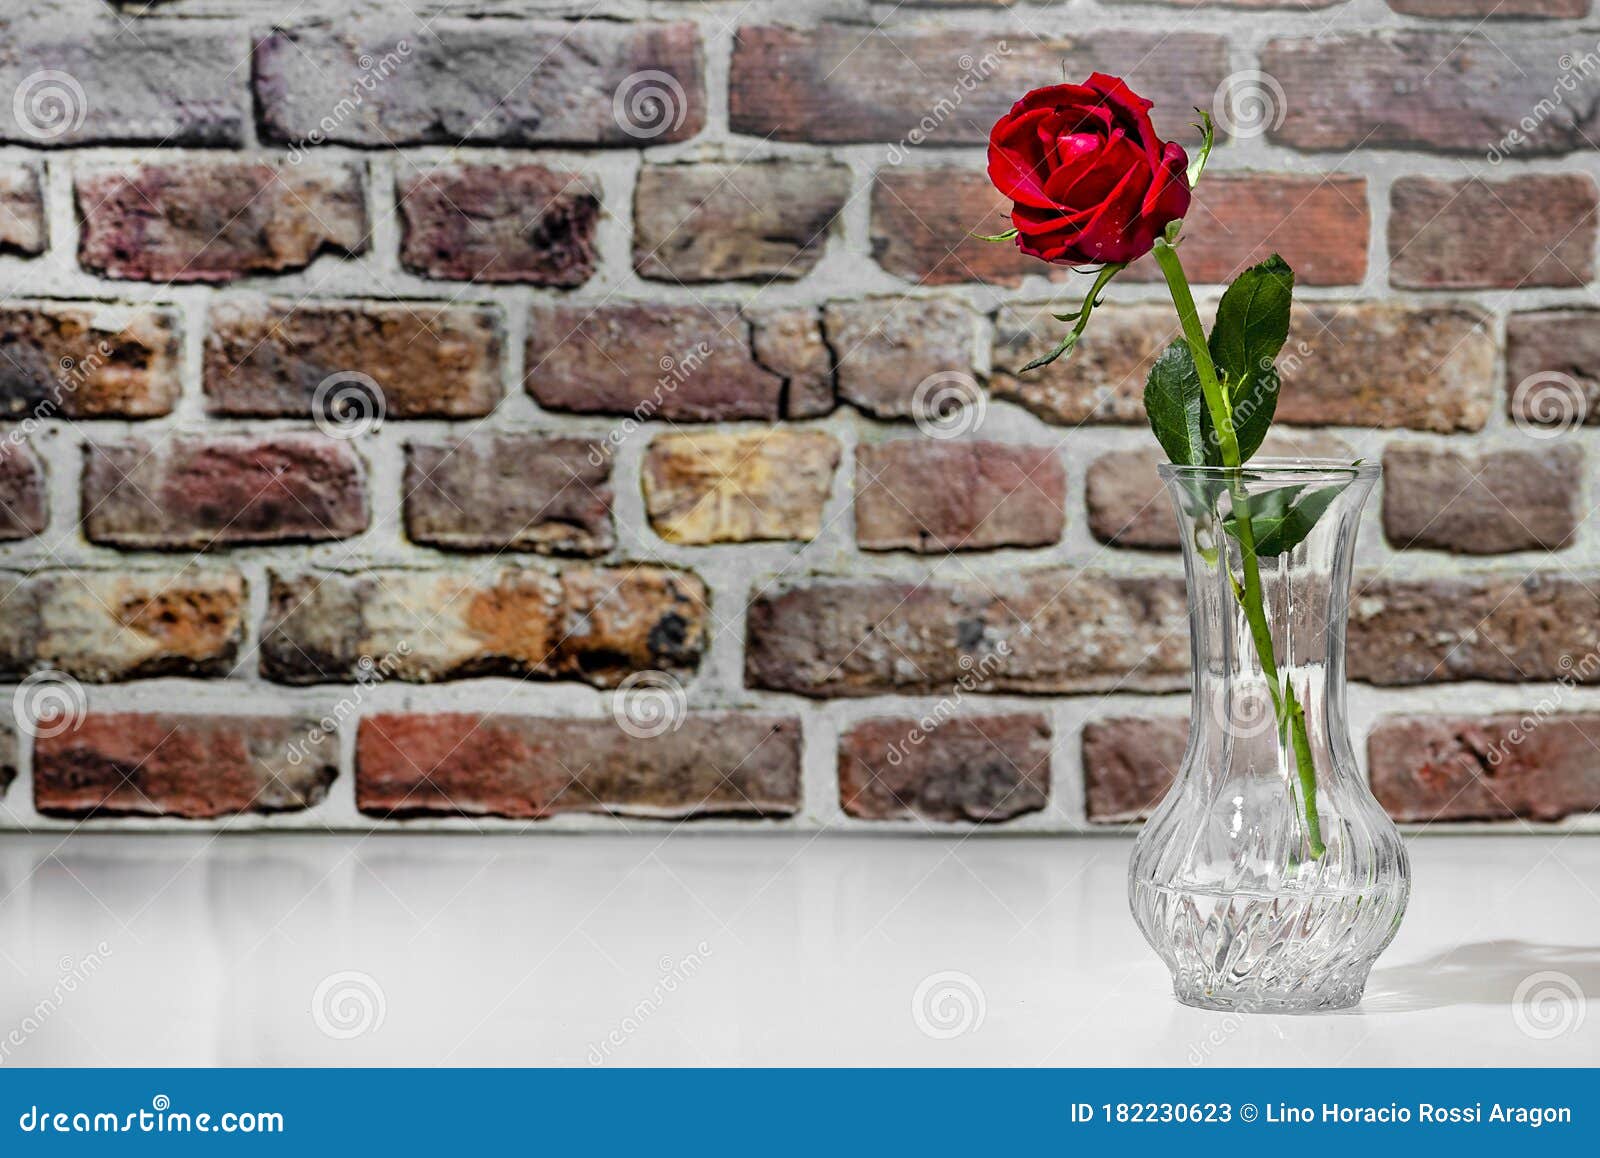 florero con rosa roja sobre mesa blanca con pared de ladrillos rojos